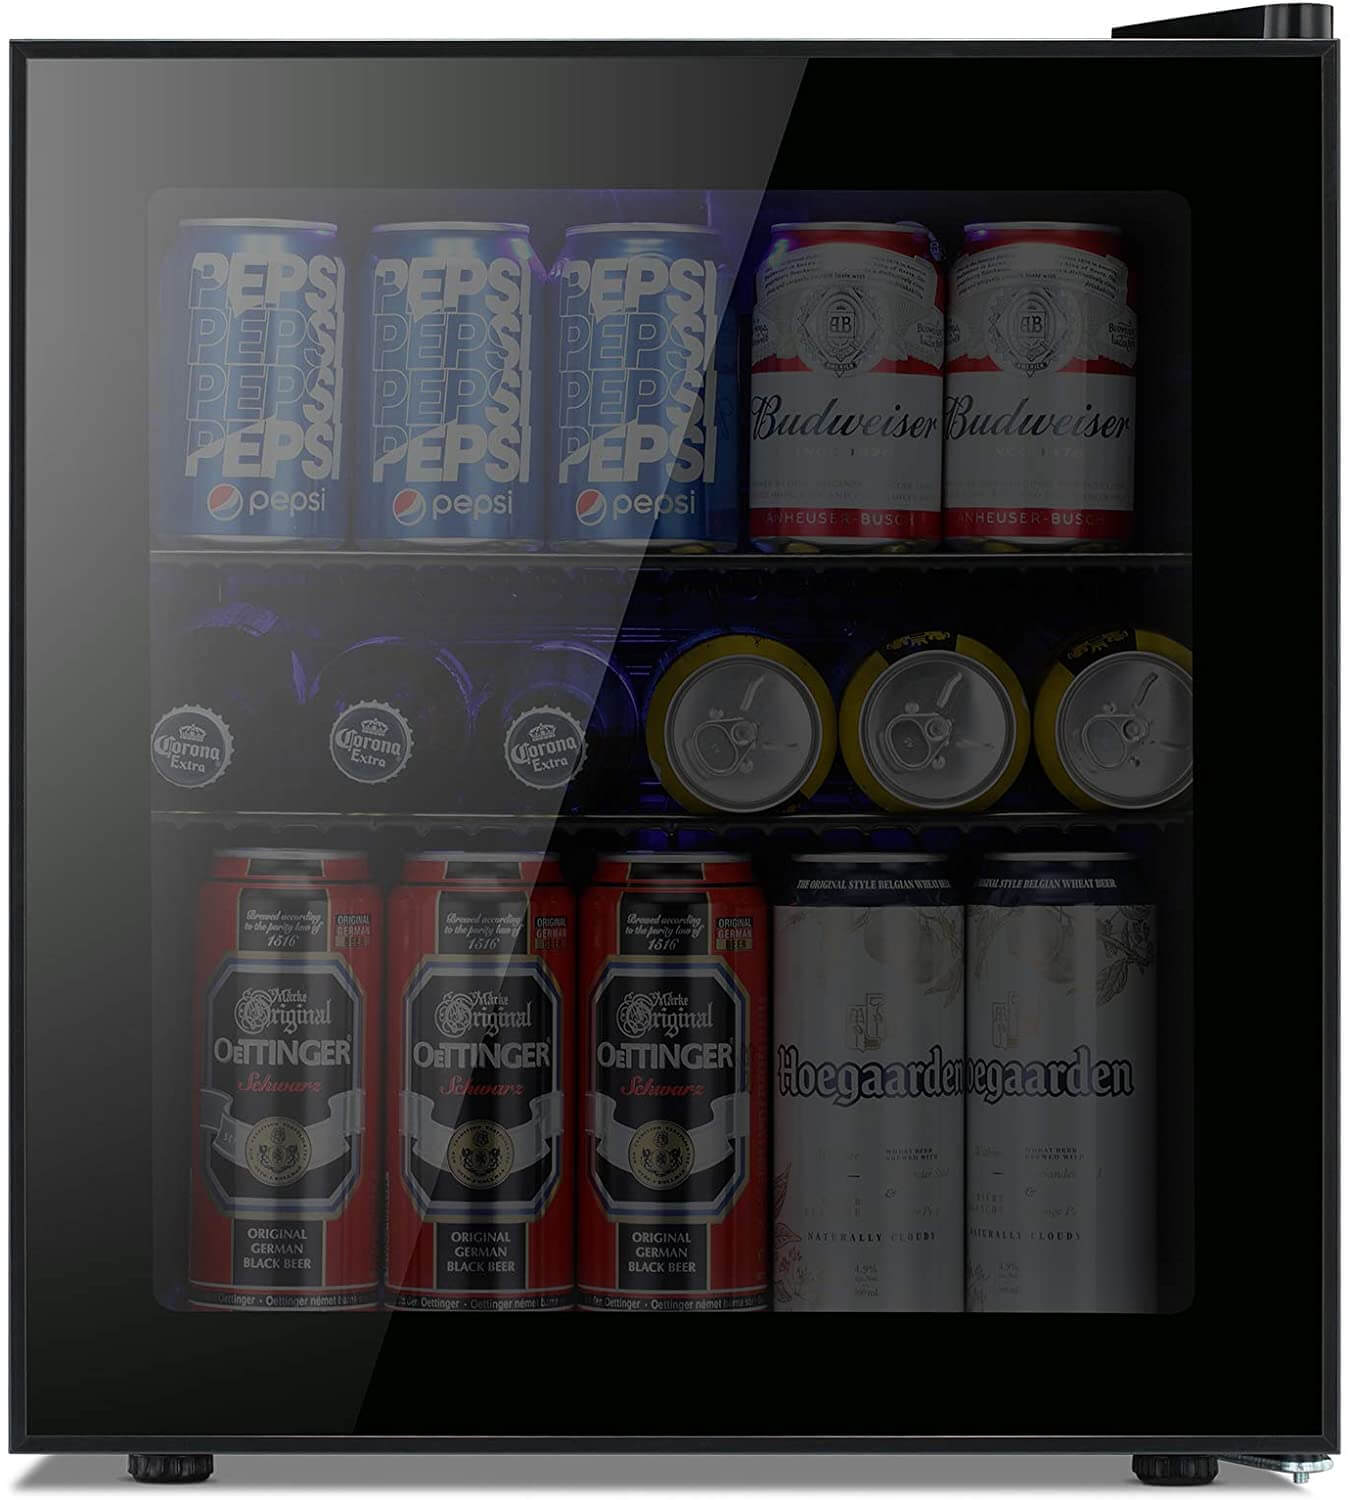 Kismile Beverage Beer Refrigerator